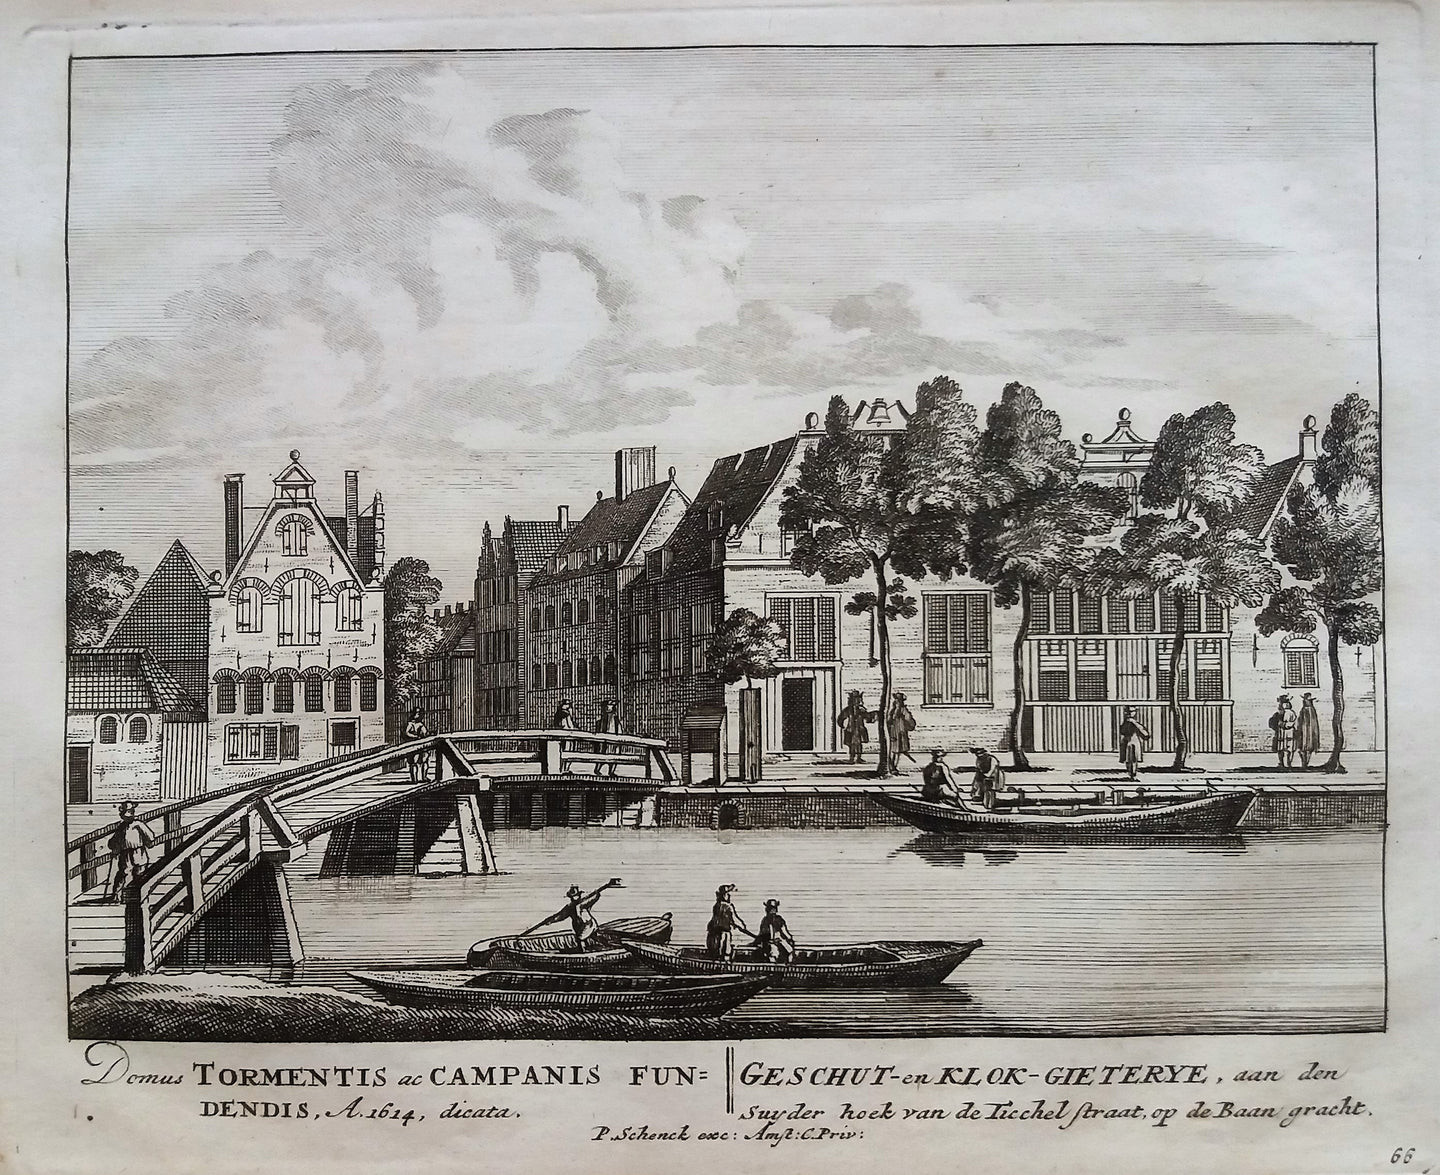 Amsterdam Lijnbaansgracht Geschut- en Klokgieterij - P Schenk - ca. 1708